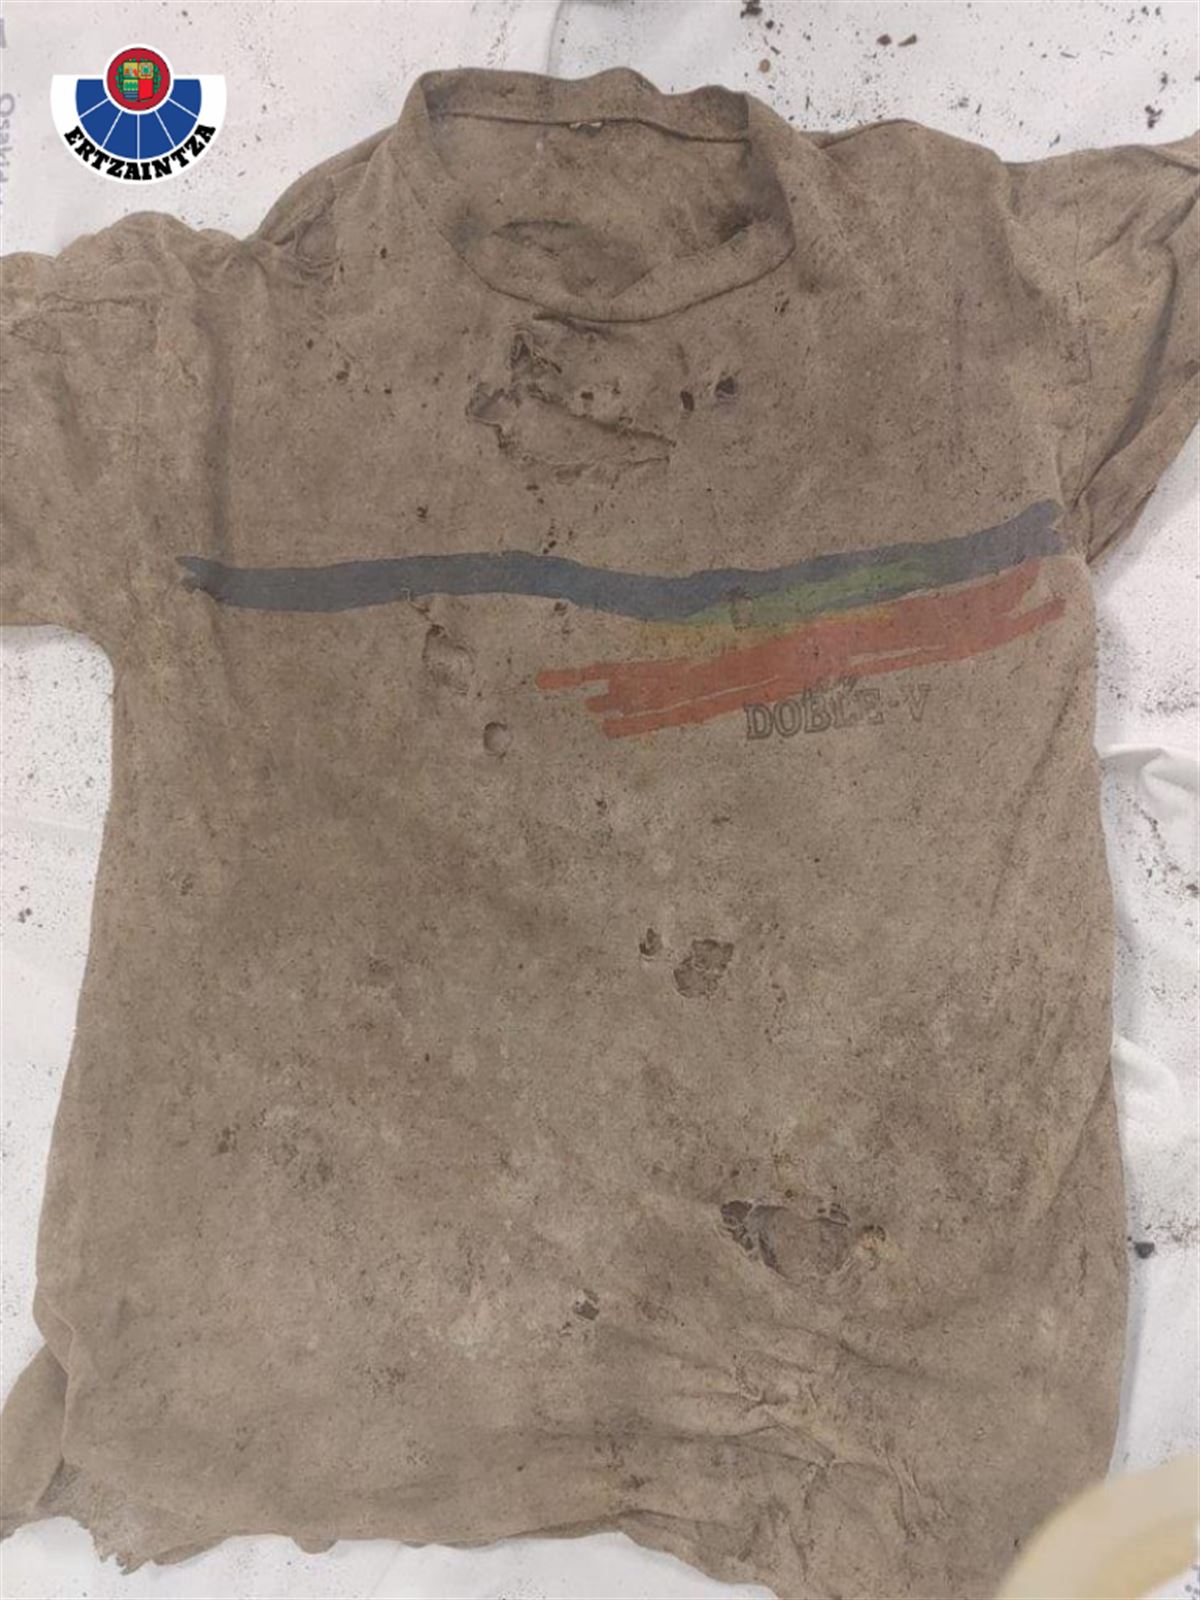 Camiseta encontrada junto a los restos humanos en Barrika.